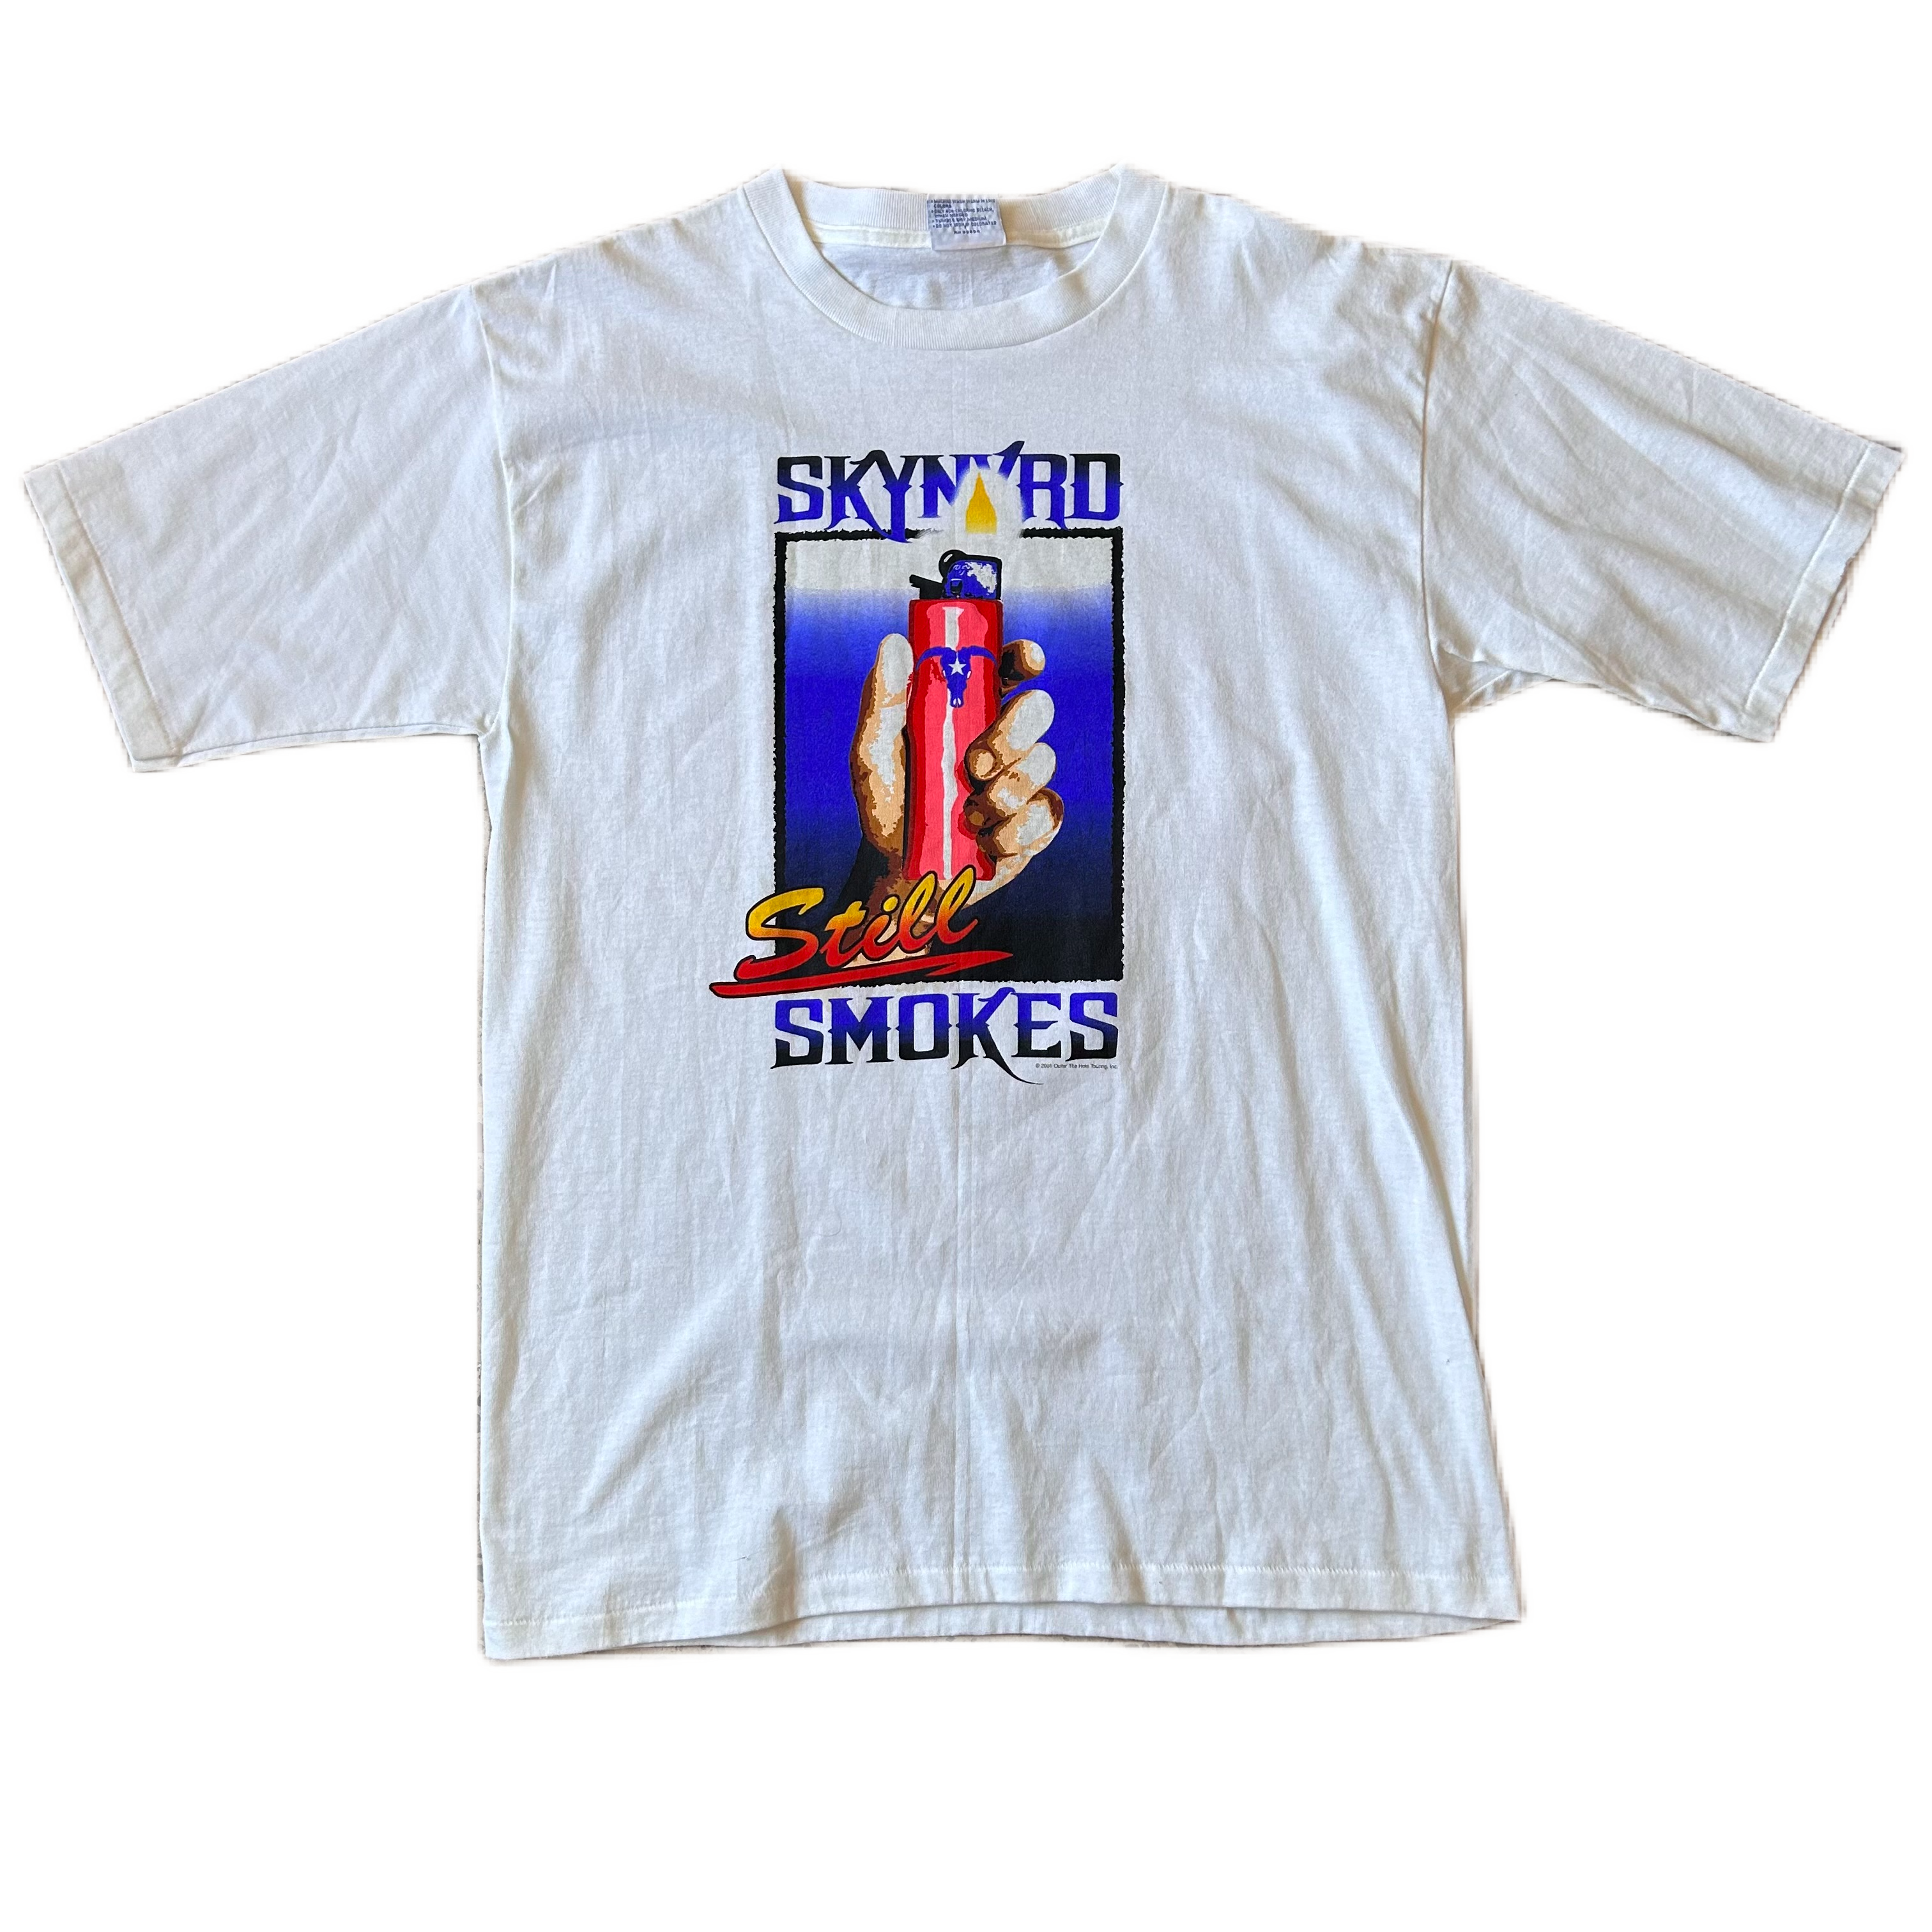 Vintage 1990s Skynyrd Still Smokes Tee